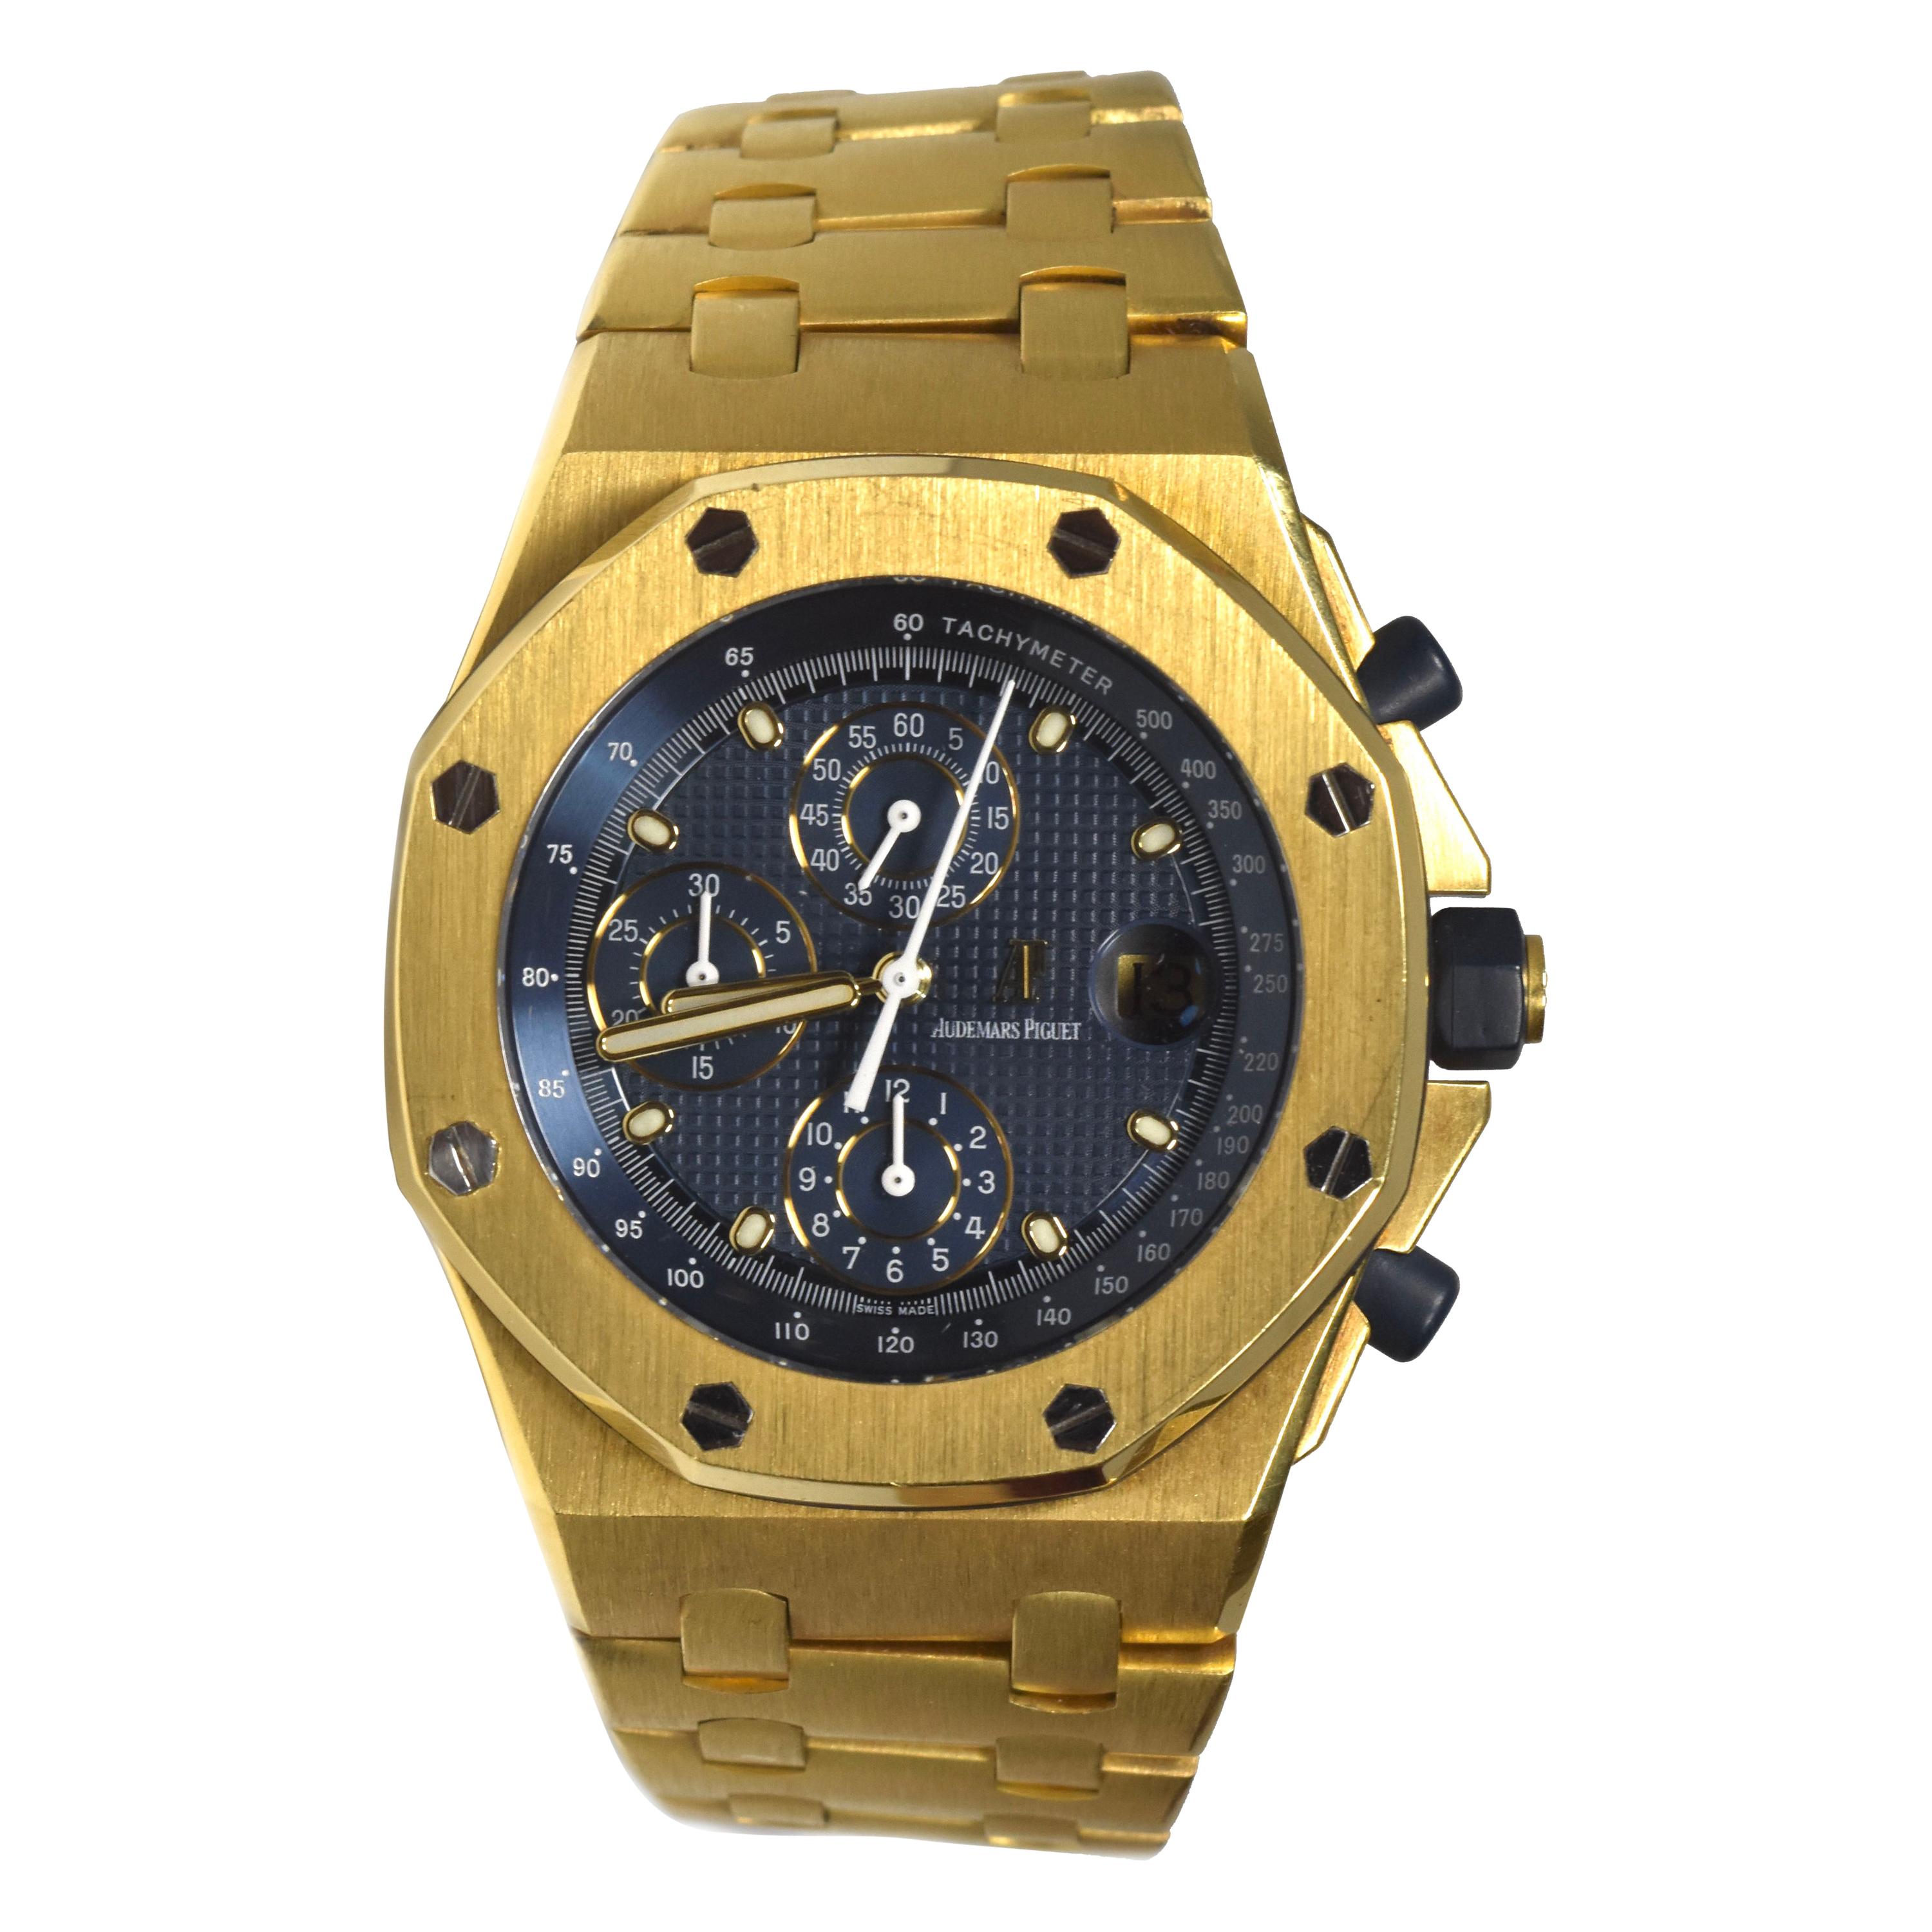 Audemars Piguet Chronograph Royal Oak Offshore 18 Karat Yellow Gold Watch